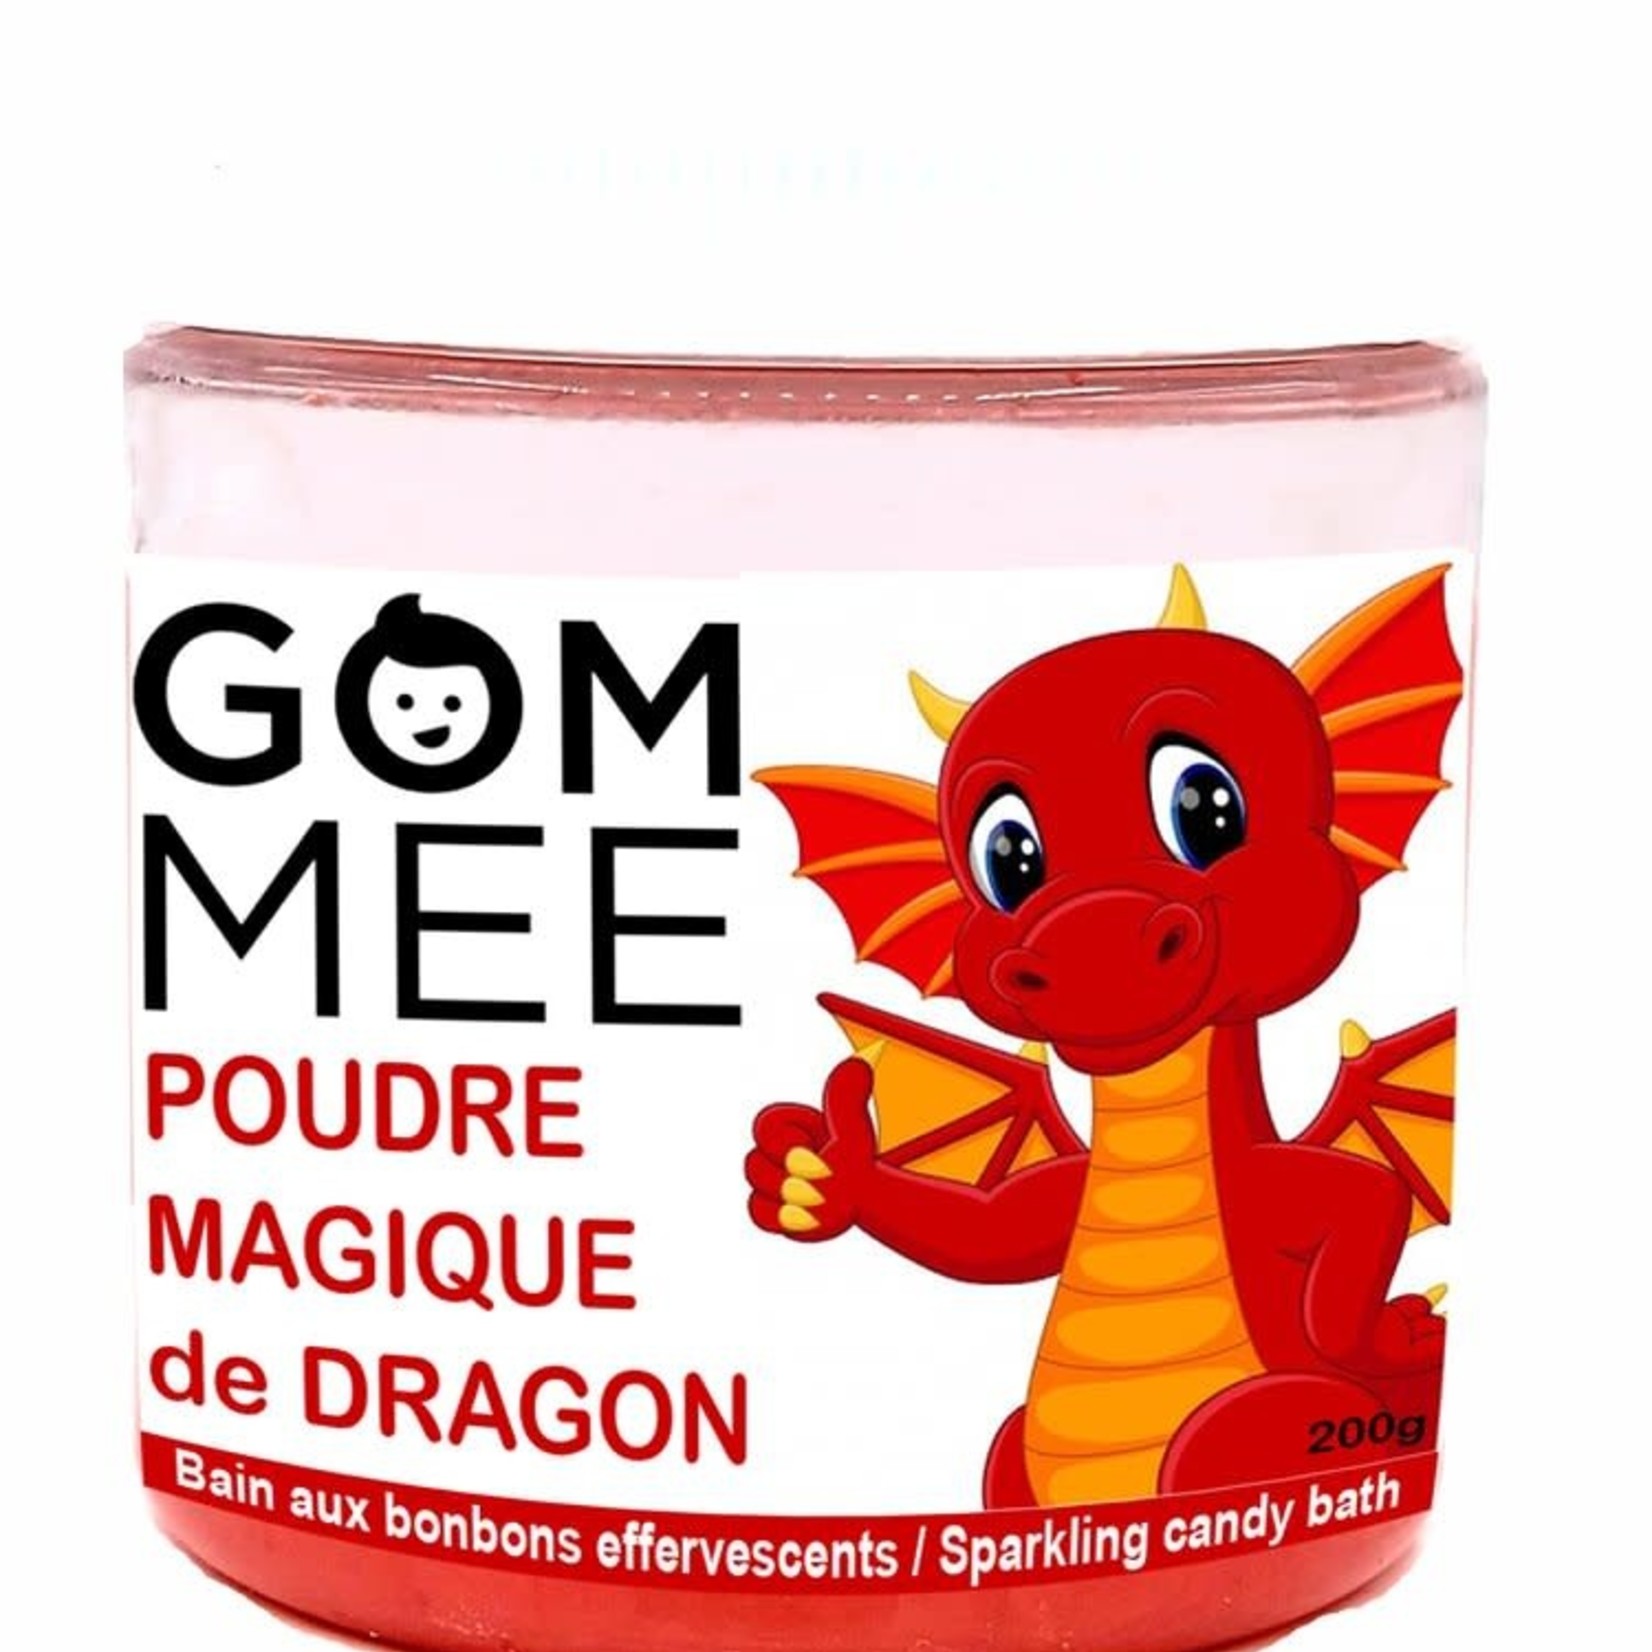 GOM-MEE Poudre magique de Dragon